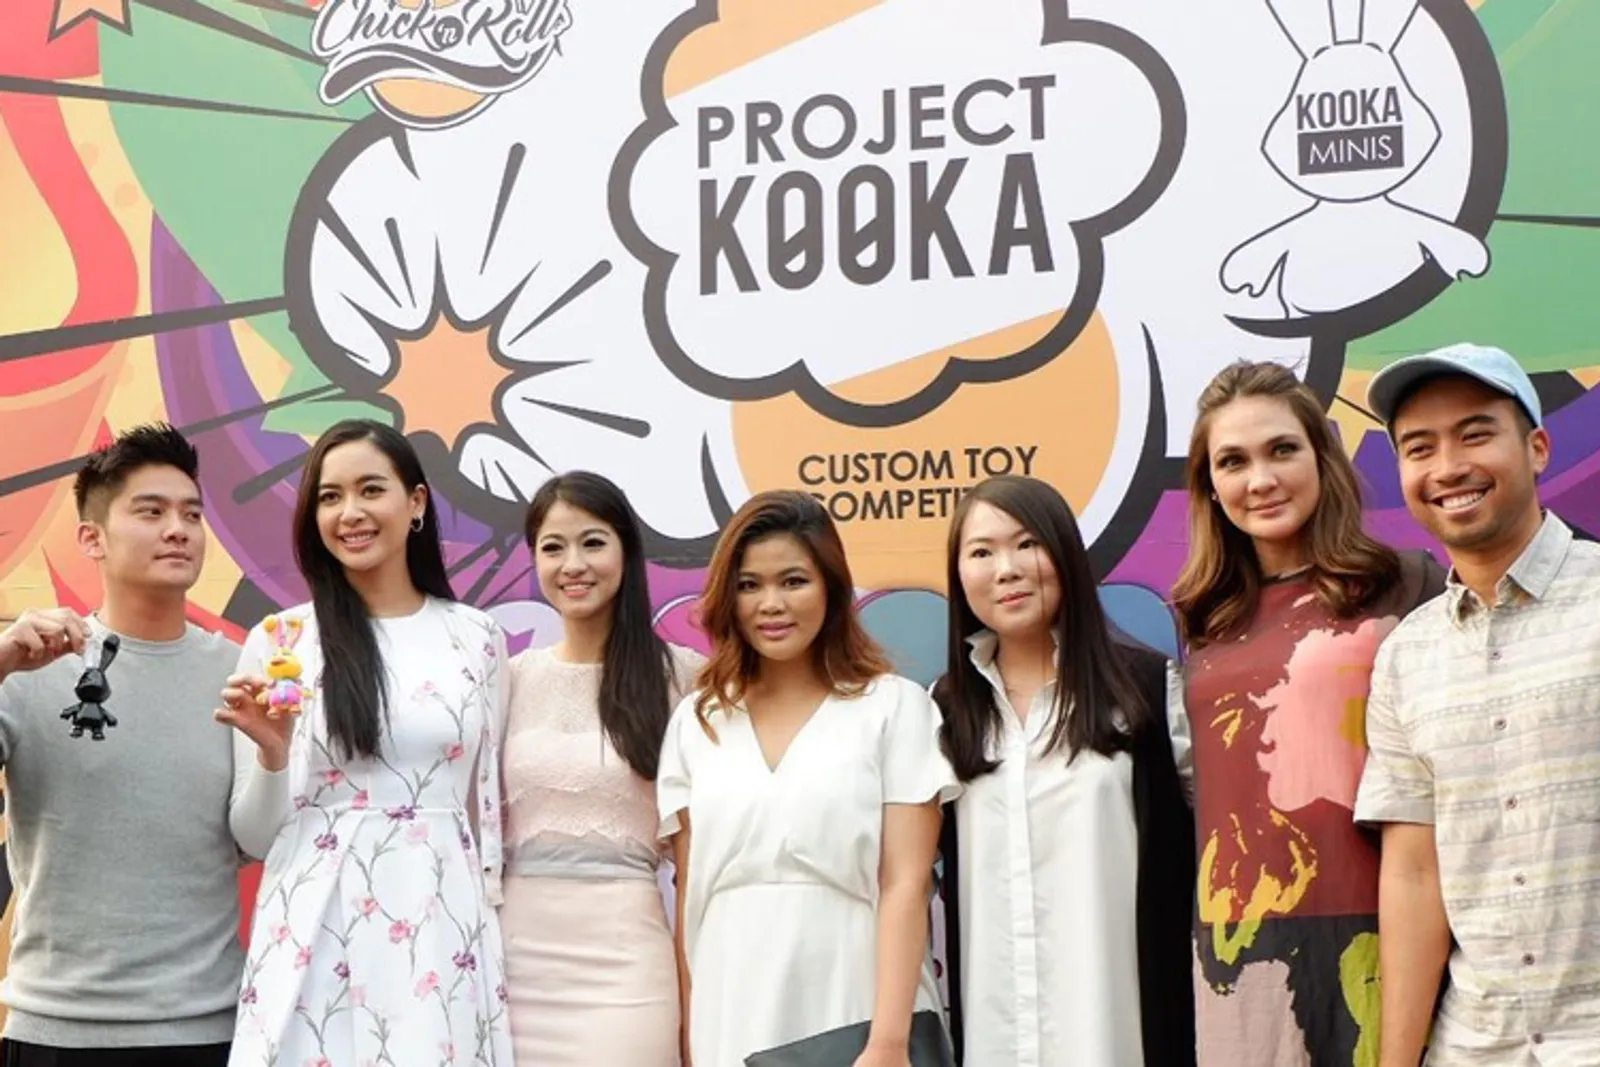 Project Kooka Bantu Anak Kurang Mampu dengan Lelang Boneka Lucu